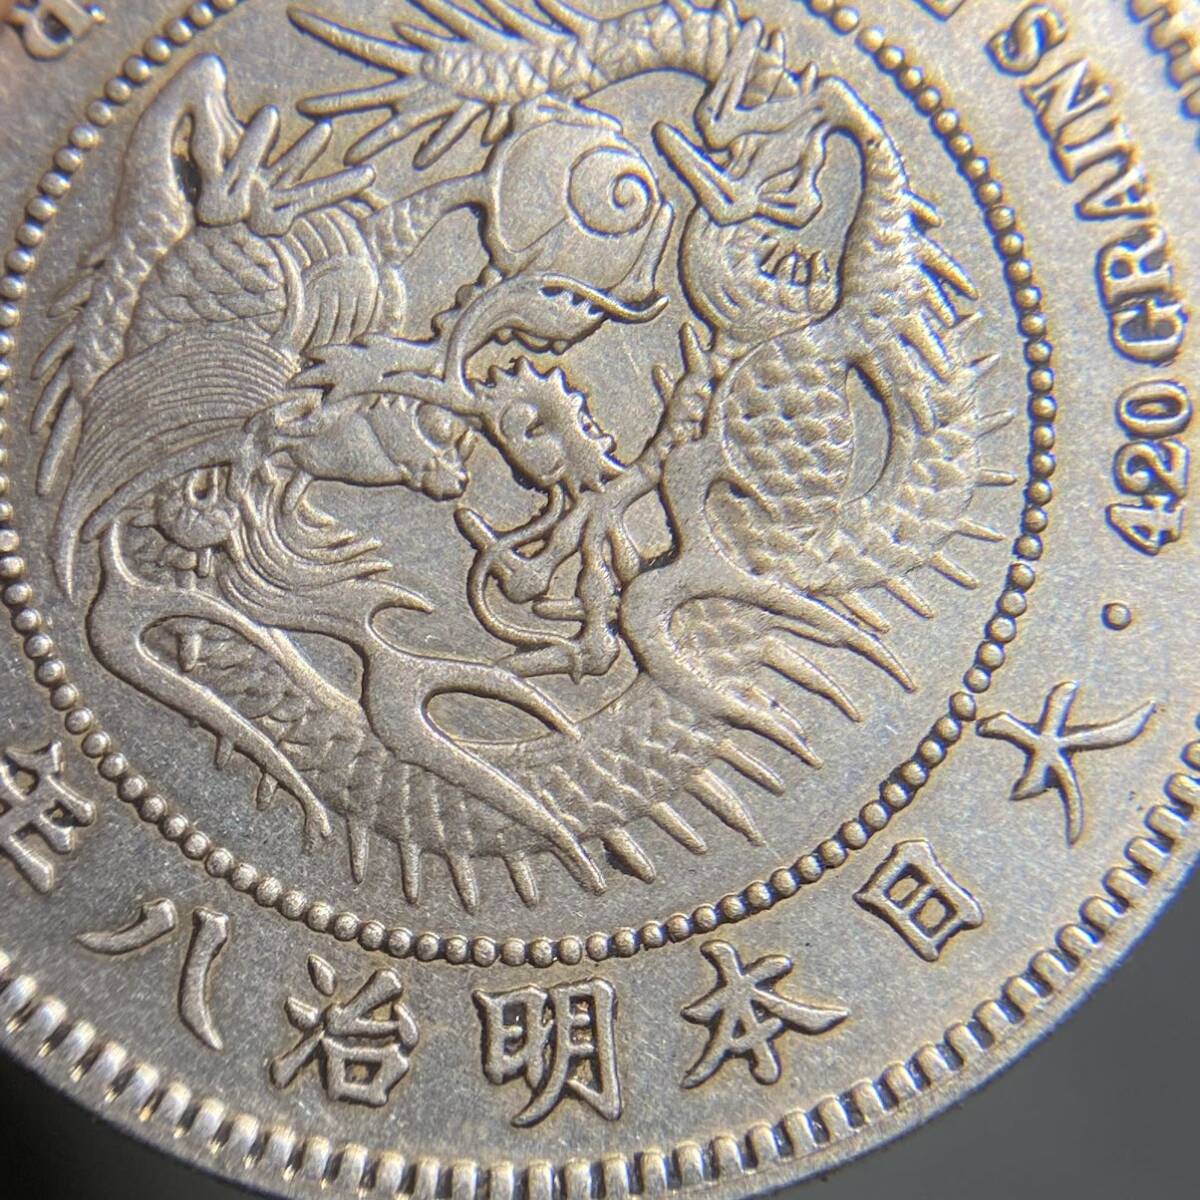 日本 古銭 貿易銀 銀貨 明治8年 約26.49g 一円貨幣 硬貨骨董品コインの画像5